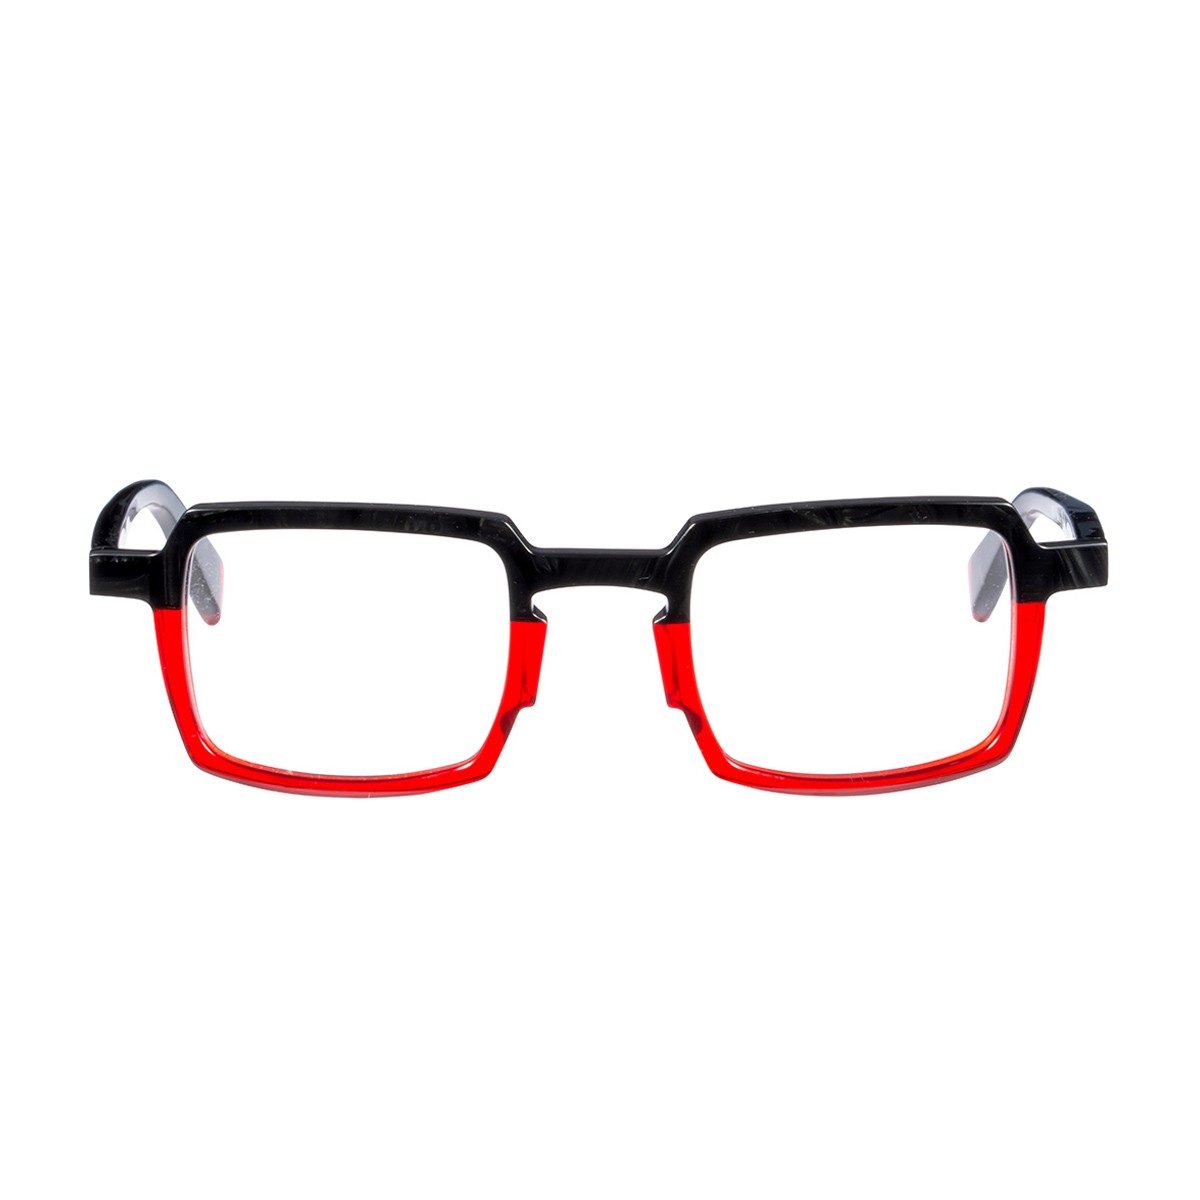 Matttew Corail | Men's eyeglasses